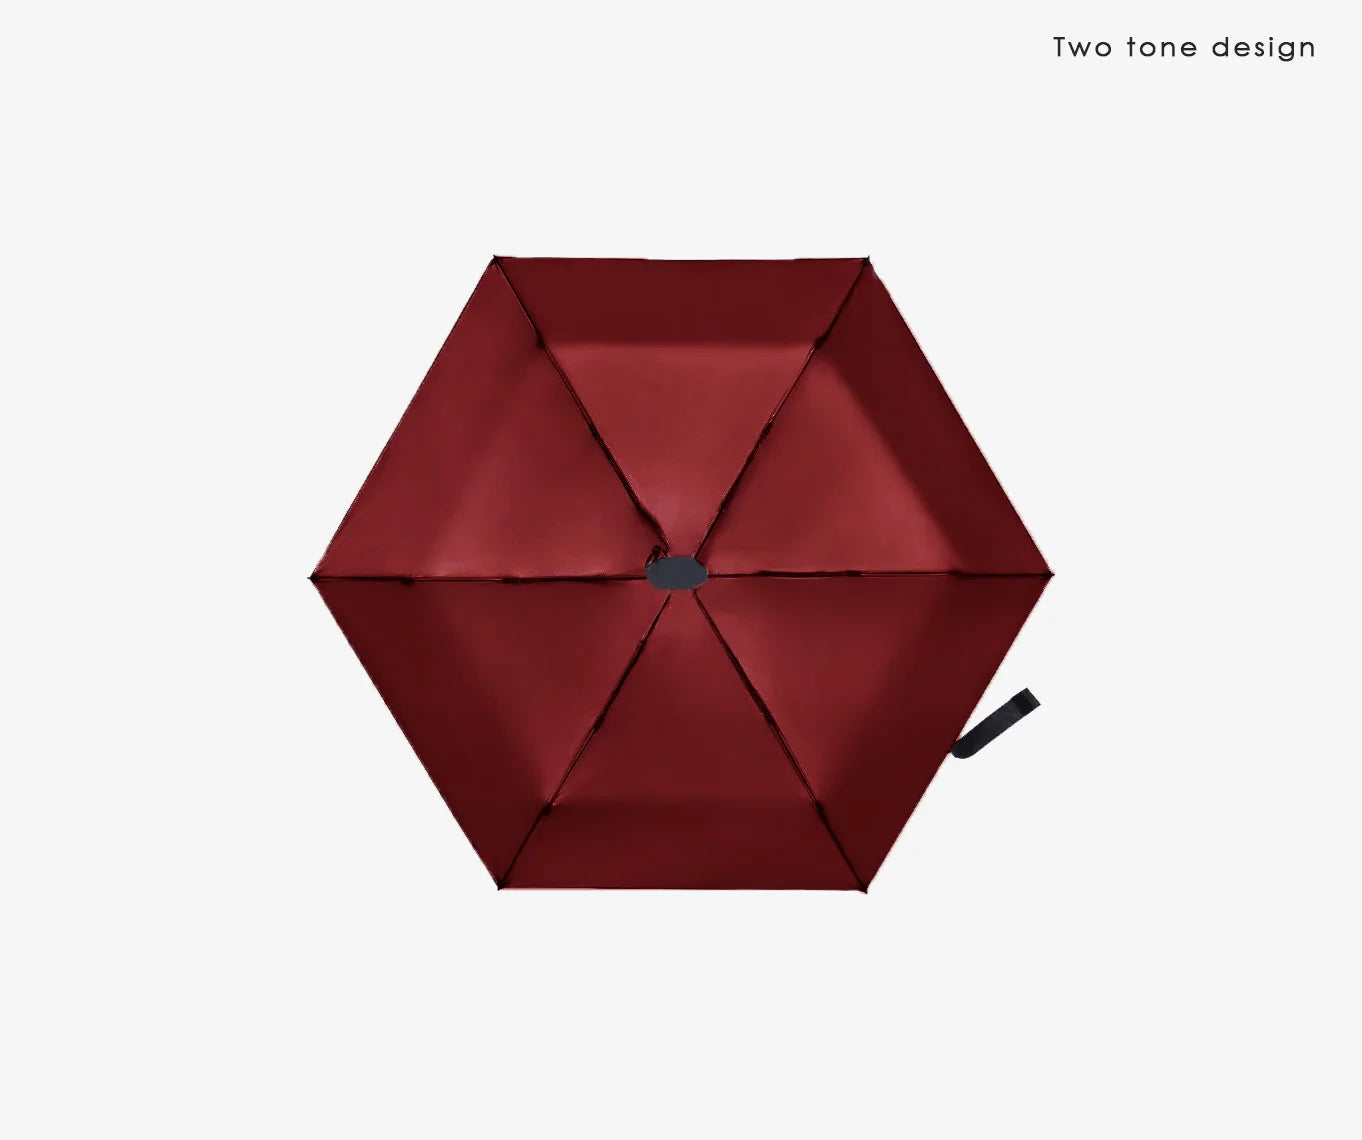 MINI Umbrella 2.0 - SKYBORNE#Crimson red